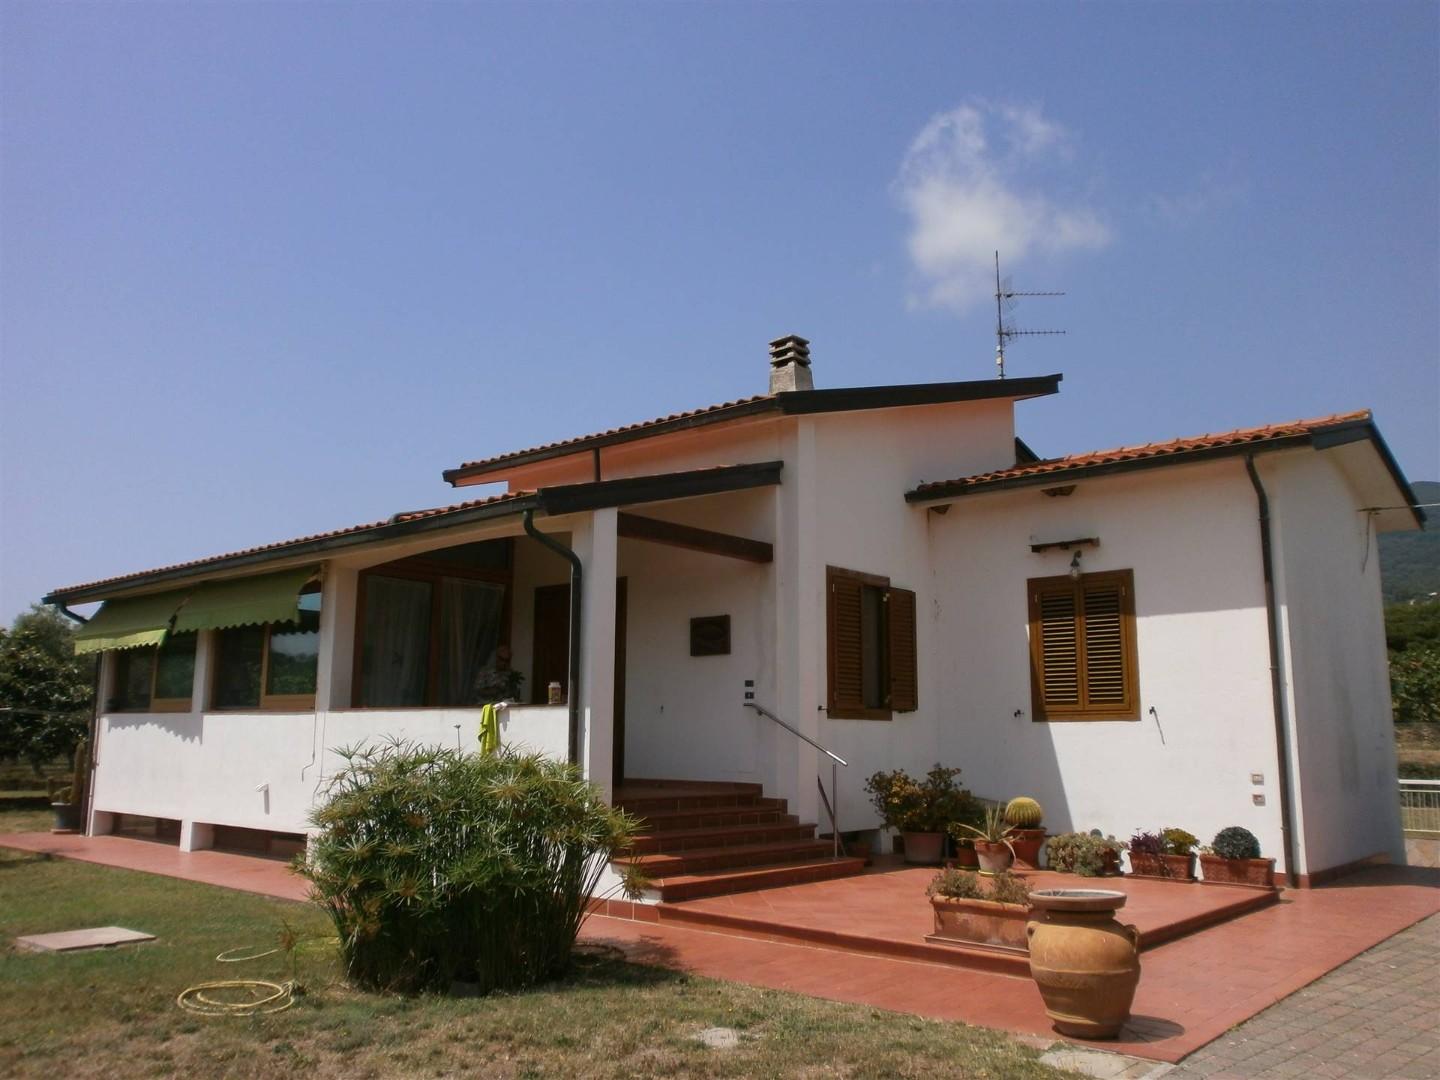 Villa in vendita a Campo nell'Elba, 5 locali, prezzo € 780.000 | PortaleAgenzieImmobiliari.it